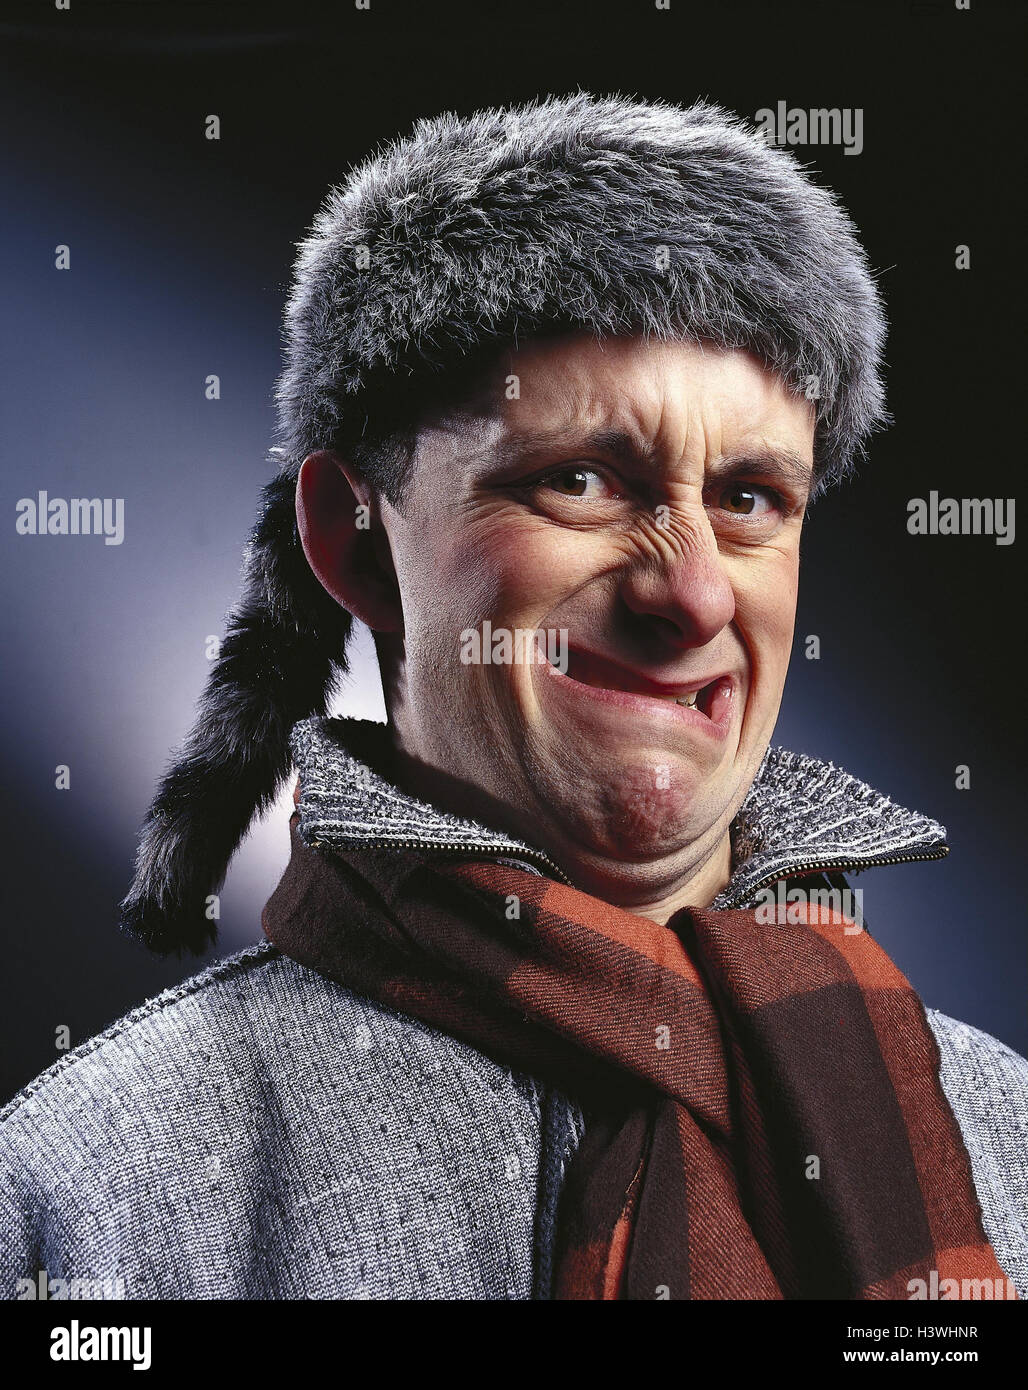 L'homme, bonnet de fourrure (trapper), écharpe, jouer du visage, fait de  grimace, portrait, mb 147 A4 Photo Stock - Alamy